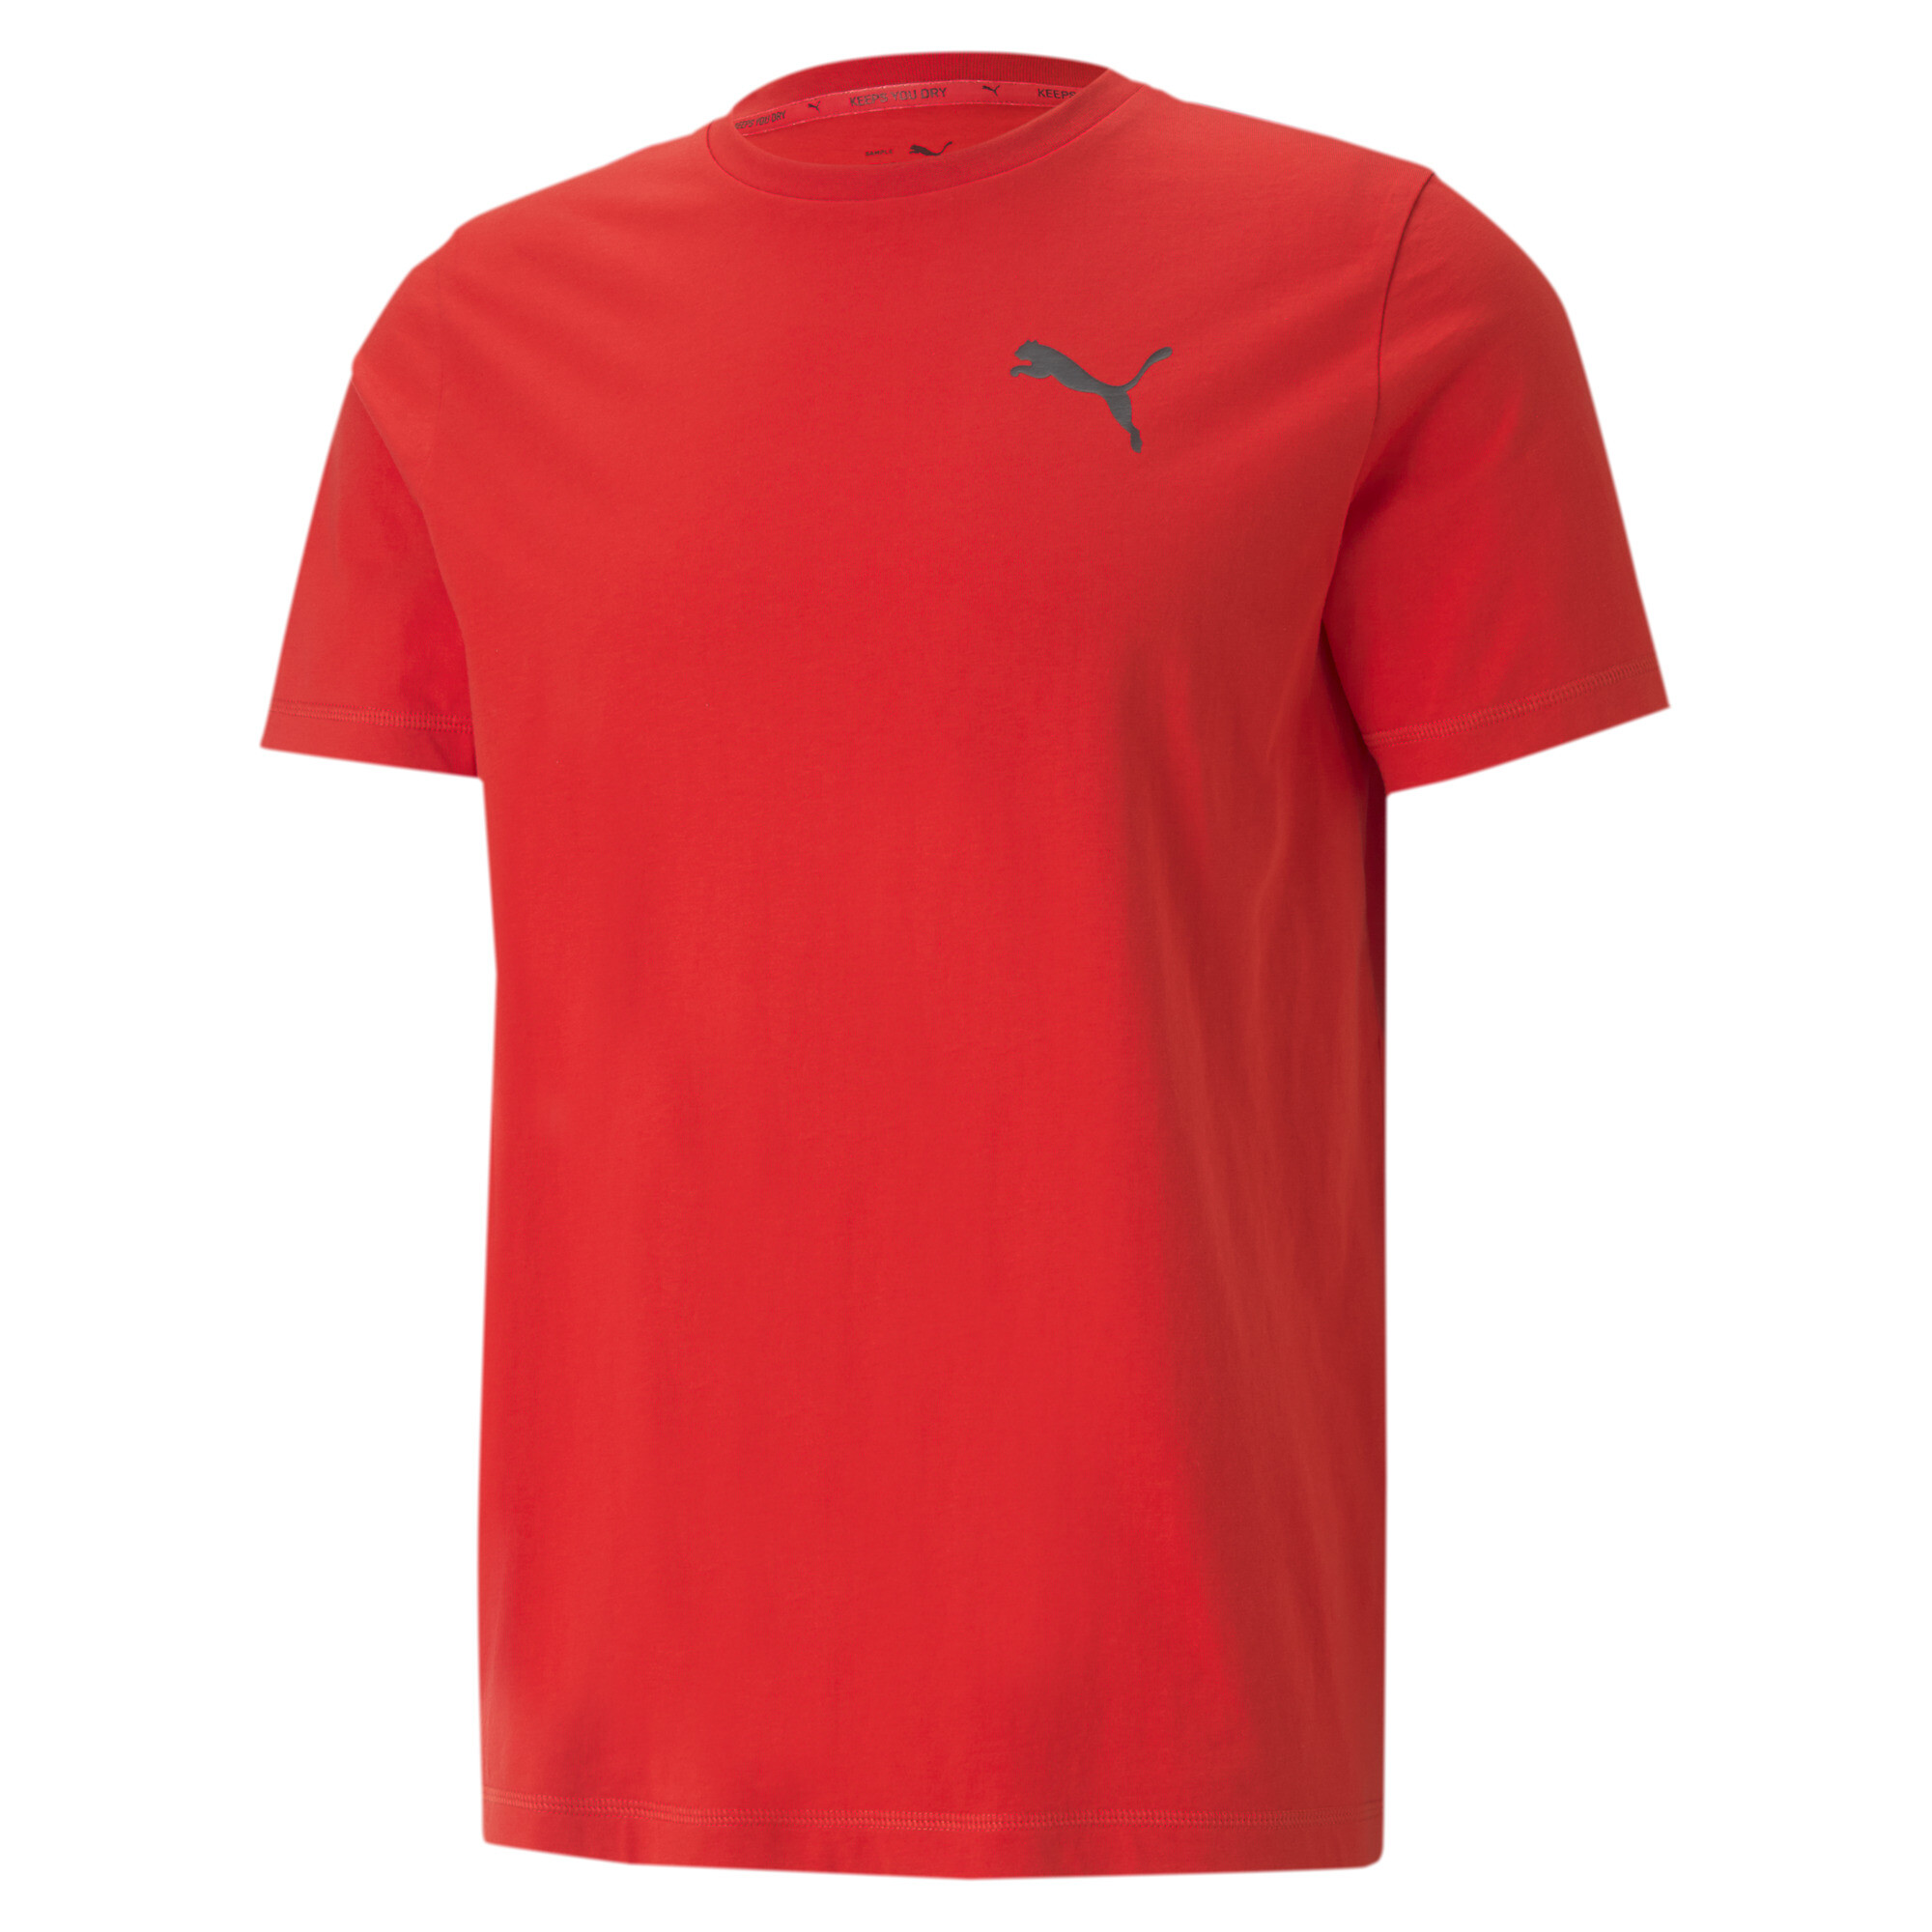  プーマ メンズ ACTIVE ソフト 半袖 Tシャツ メンズ High Risk Red ｜PUMA.com